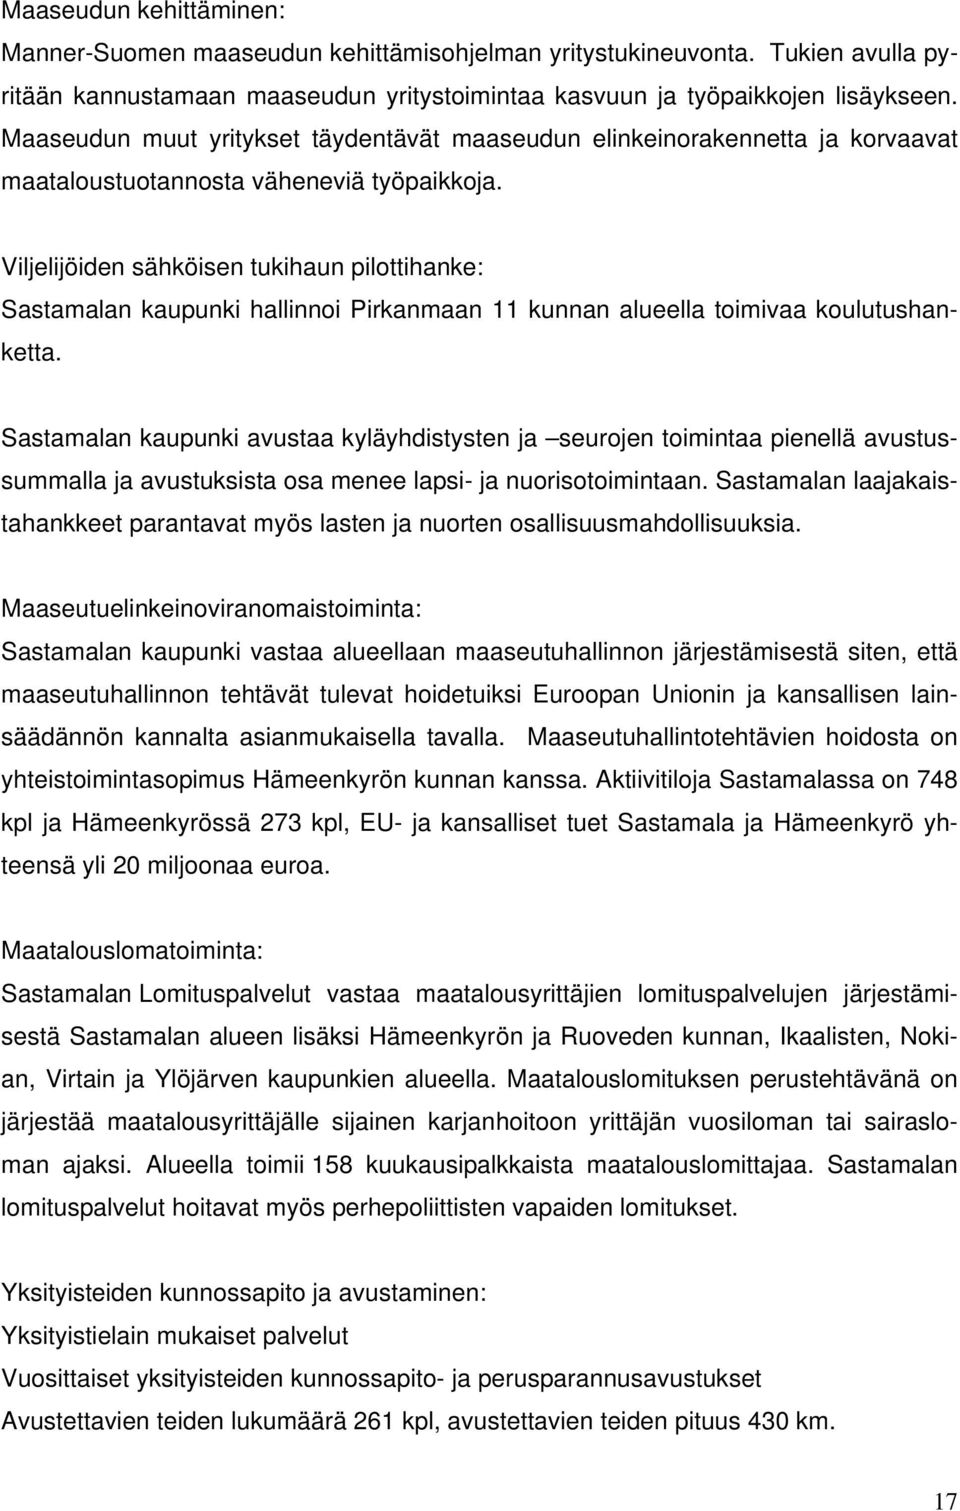 Viljelijöiden sähköisen tukihaun pilottihanke: Sastamalan kaupunki hallinnoi Pirkanmaan 11 kunnan alueella toimivaa koulutushanketta.